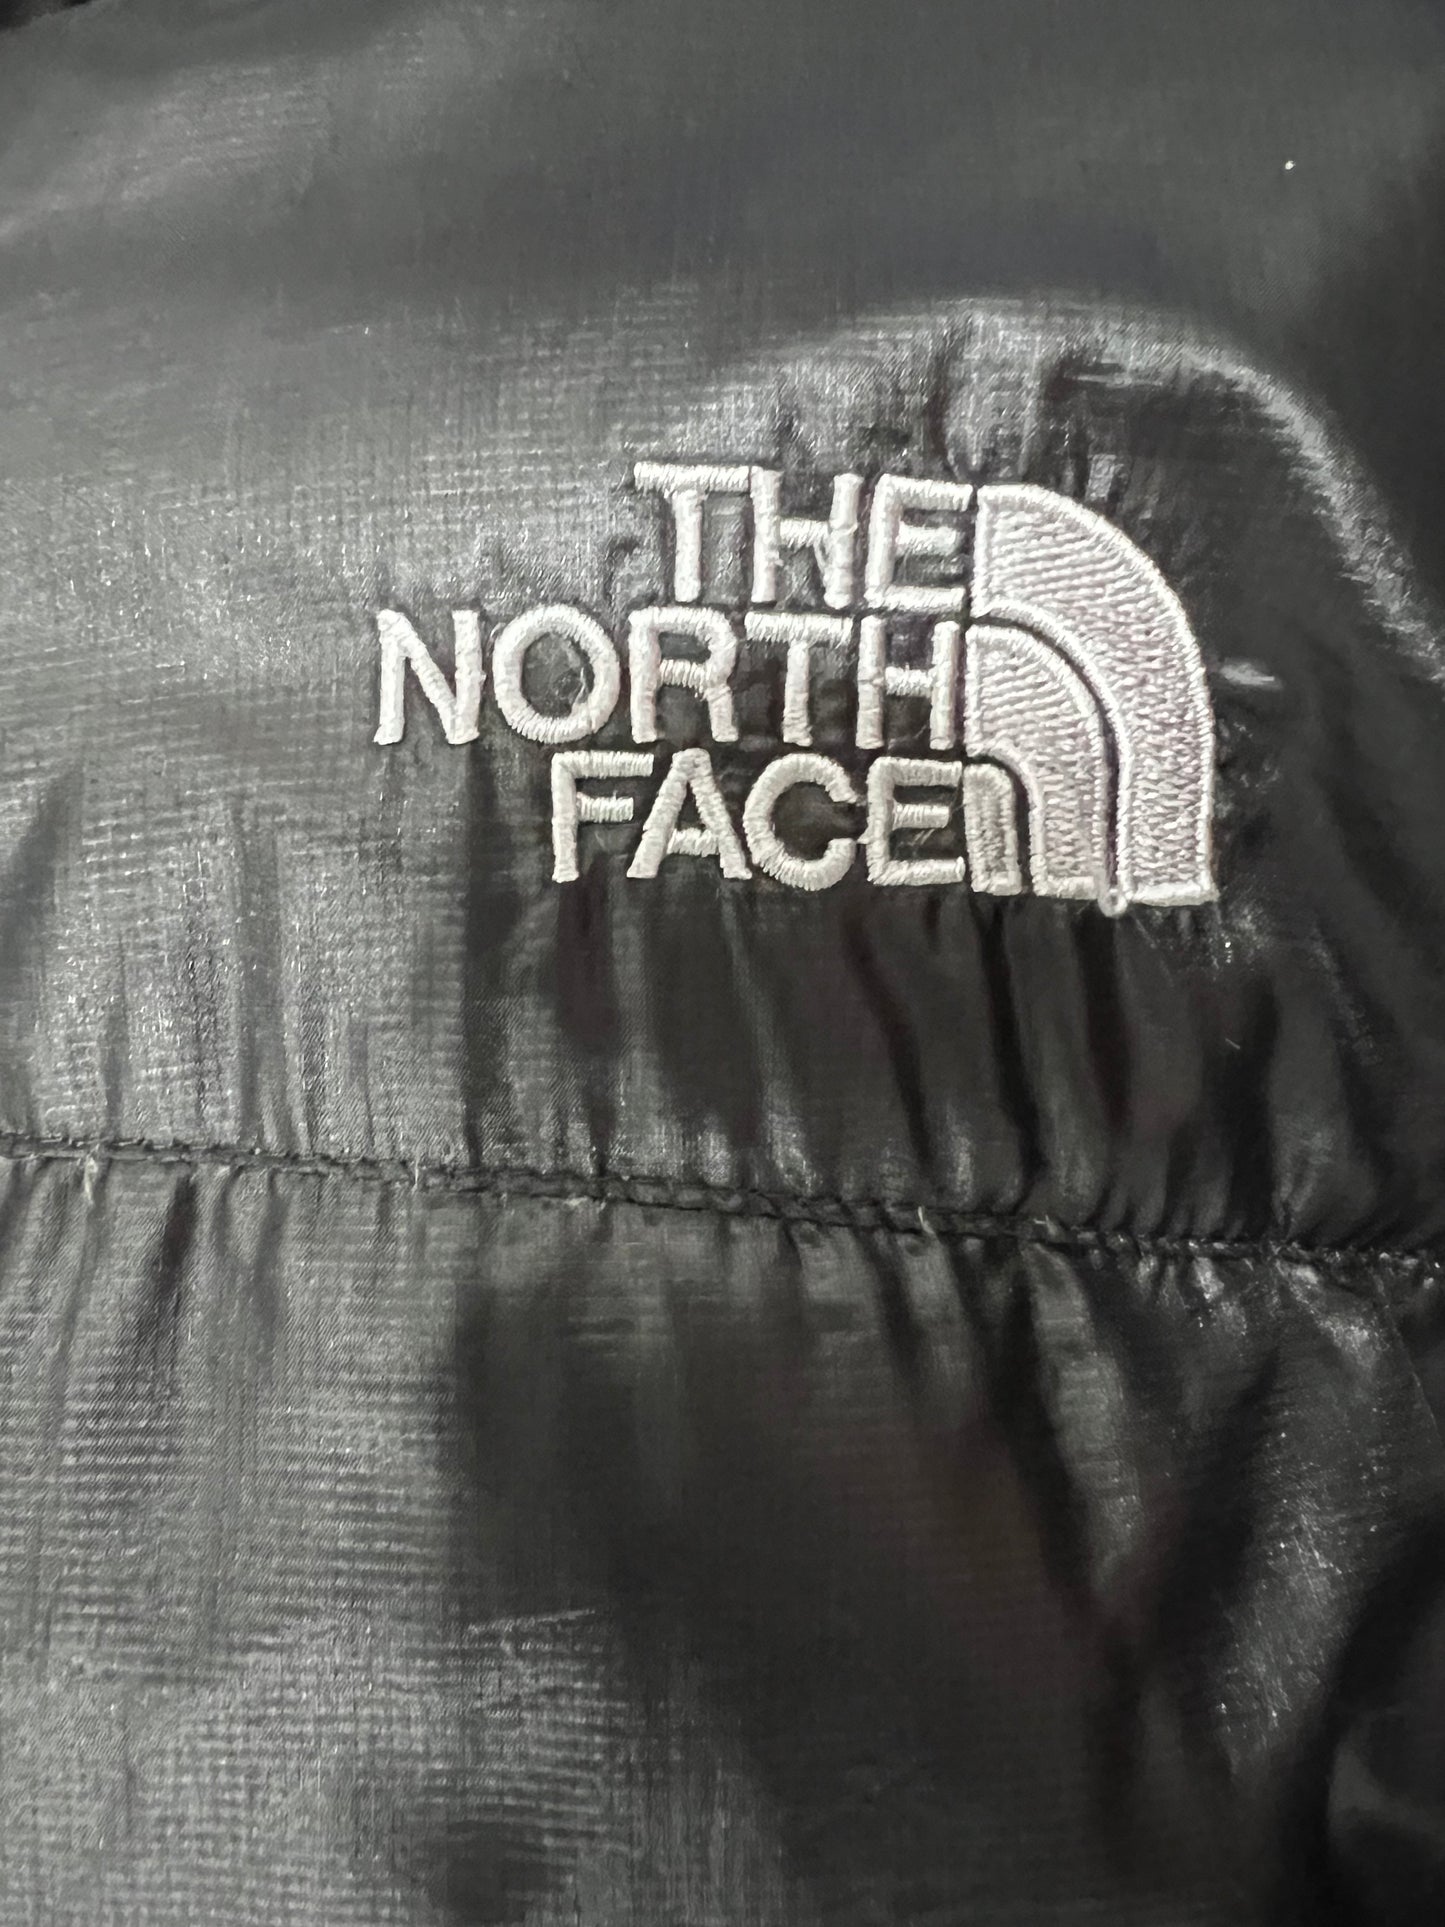 10060【THE NORTH FACE】ザノースフェイス メンズ サミットシリーズ アコンカグア ダウンジャケット ブラック 90